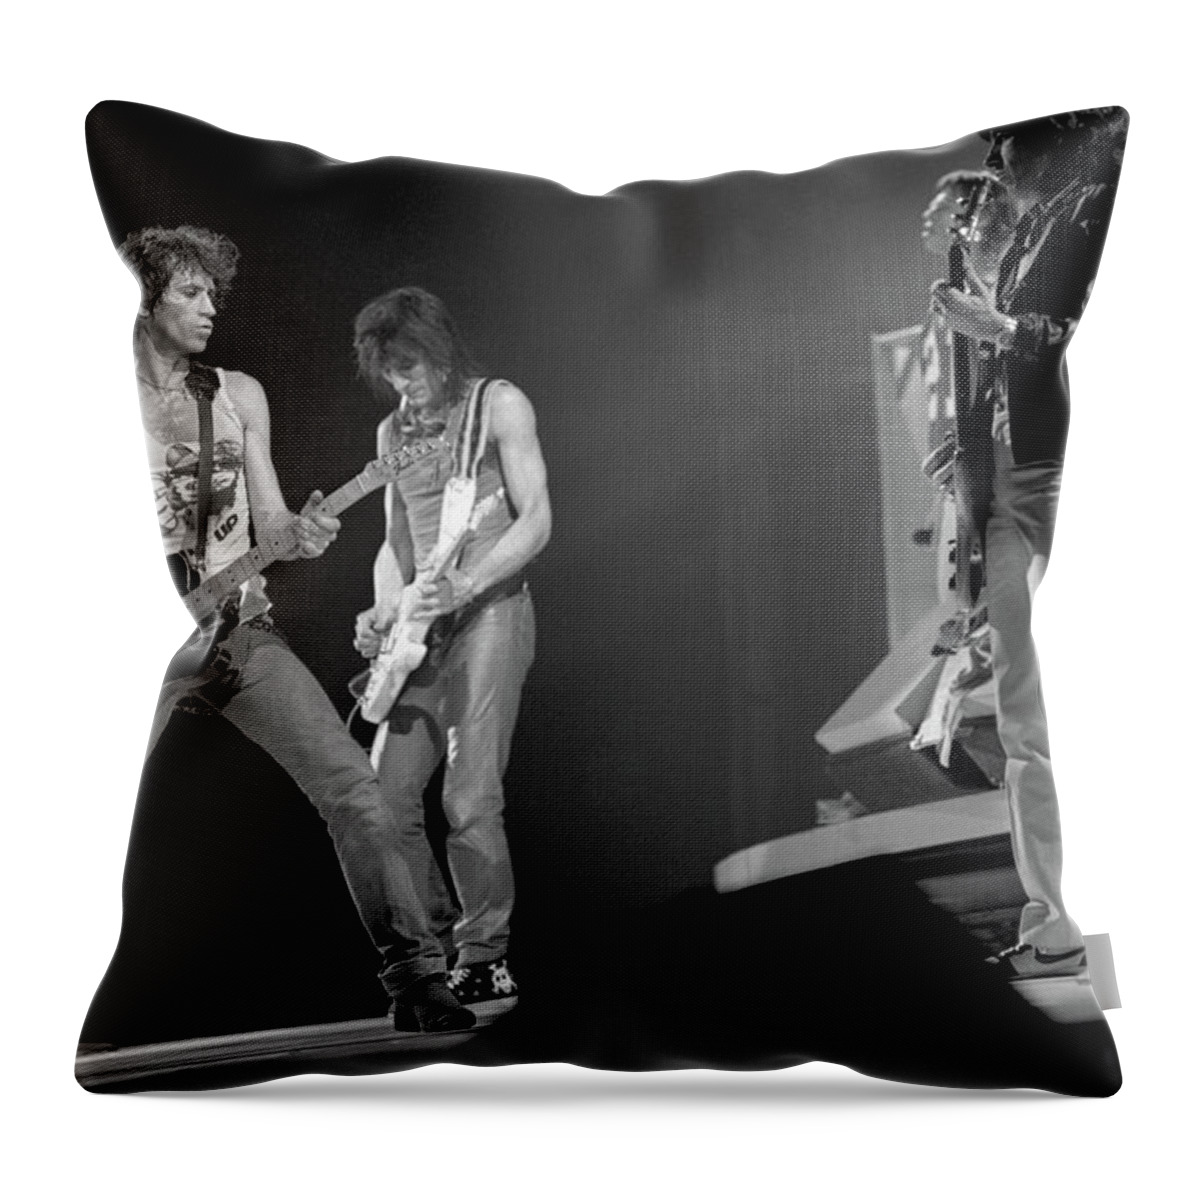 Bill Wyman Throw Pillow featuring the photograph Guitar Magic by Jurgen Lorenzen